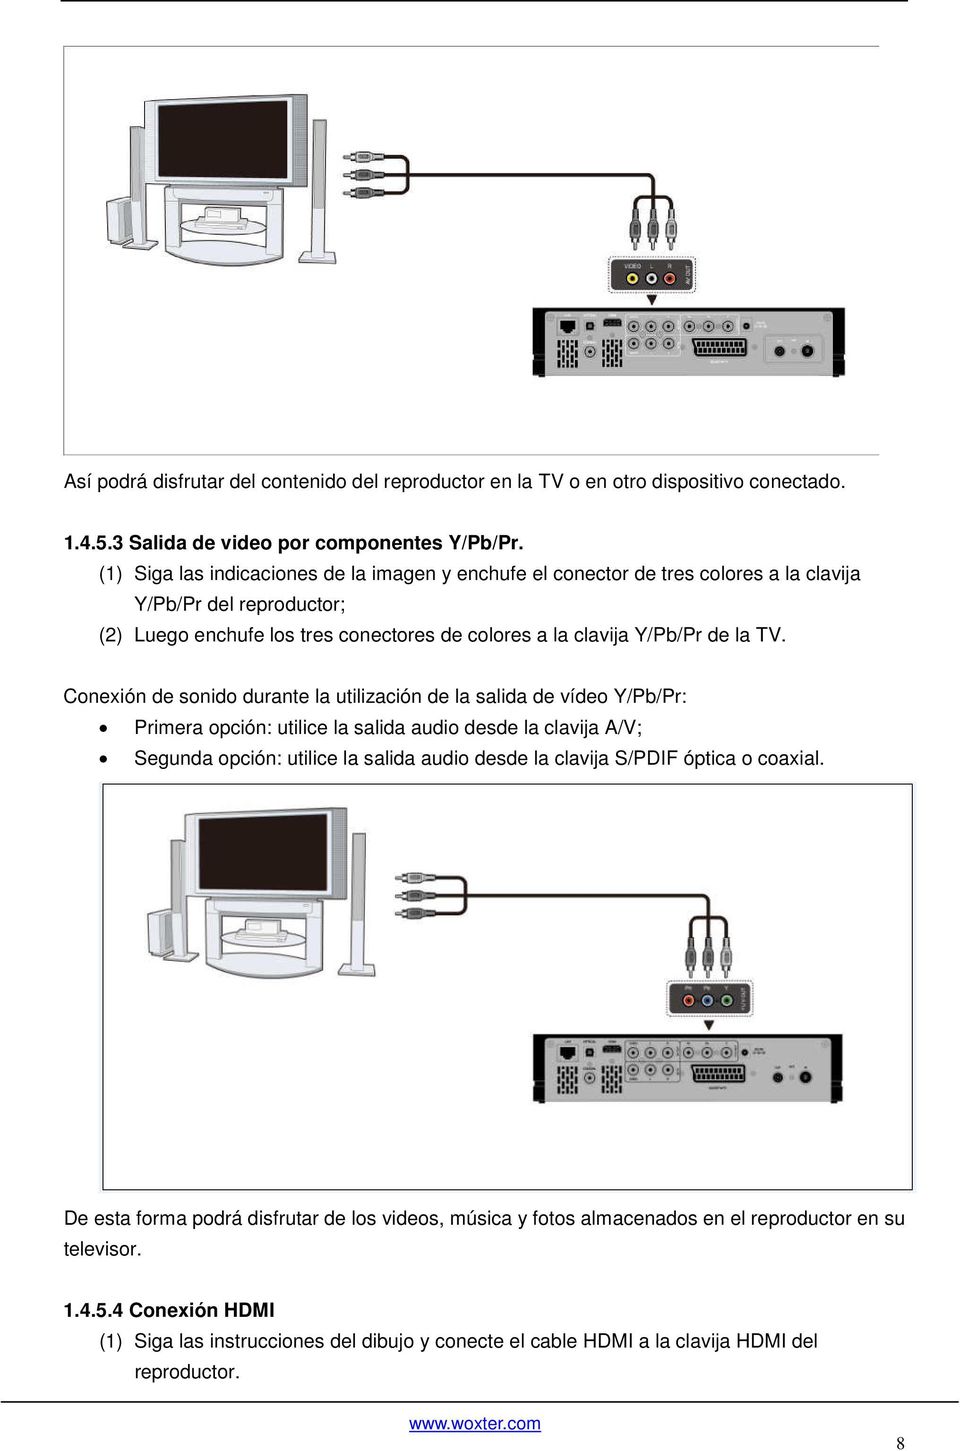 Conexión de sonido durante la utilización de la salida de vídeo Y/Pb/Pr: Primera opción: utilice la salida audio desde la clavija A/V; Segunda opción: utilice la salida audio desde la clavija